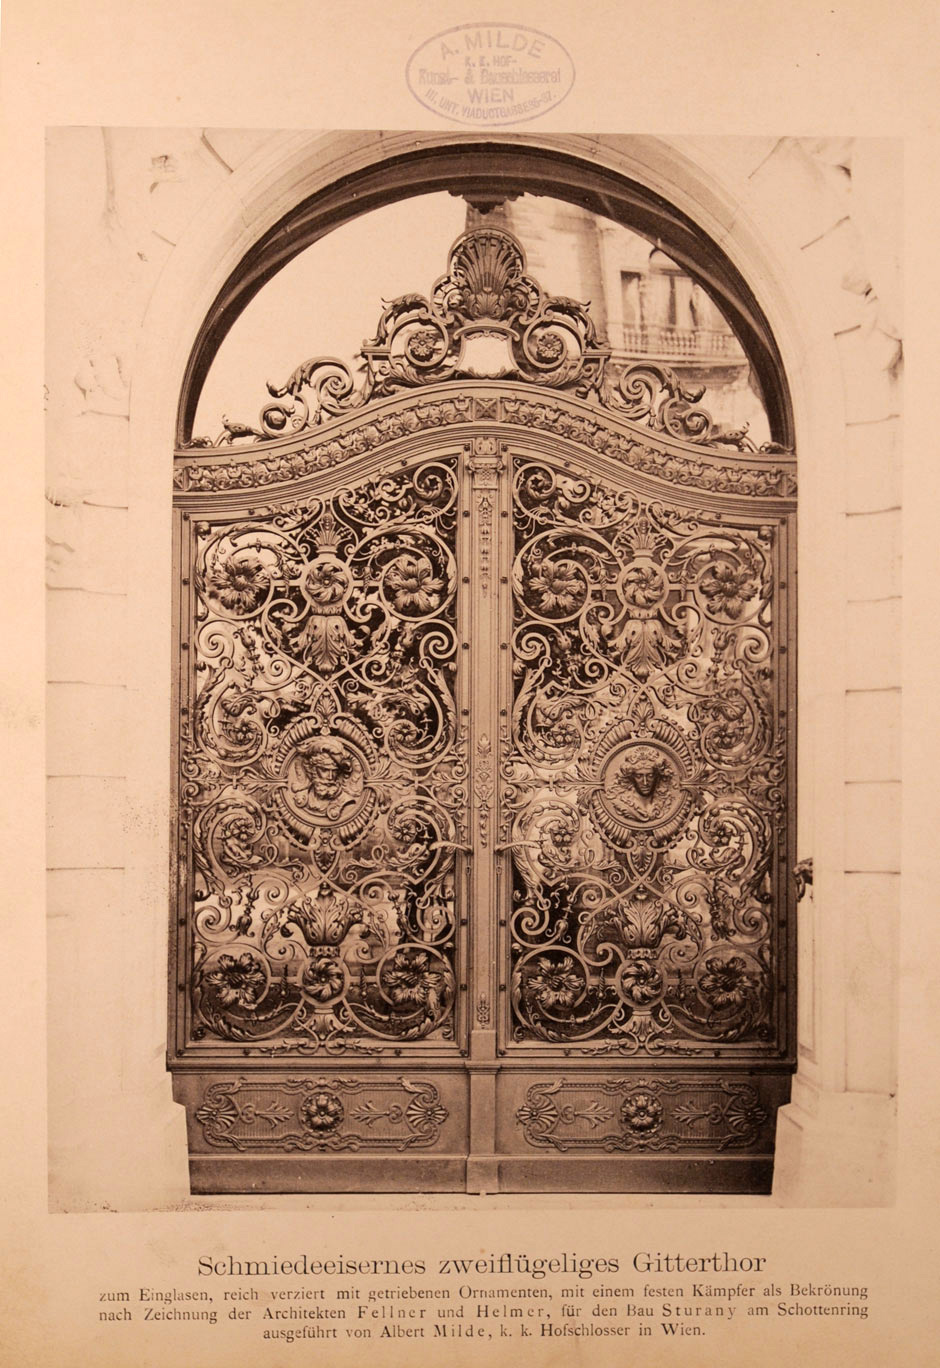 Archivbild: Palais Sturany, schmiedeeisernes reichverziertes zweiflügeliges Gittertor zum Einglasen mit getriebenen Ornamenten und einem festen Kämpfer als Bekrönung